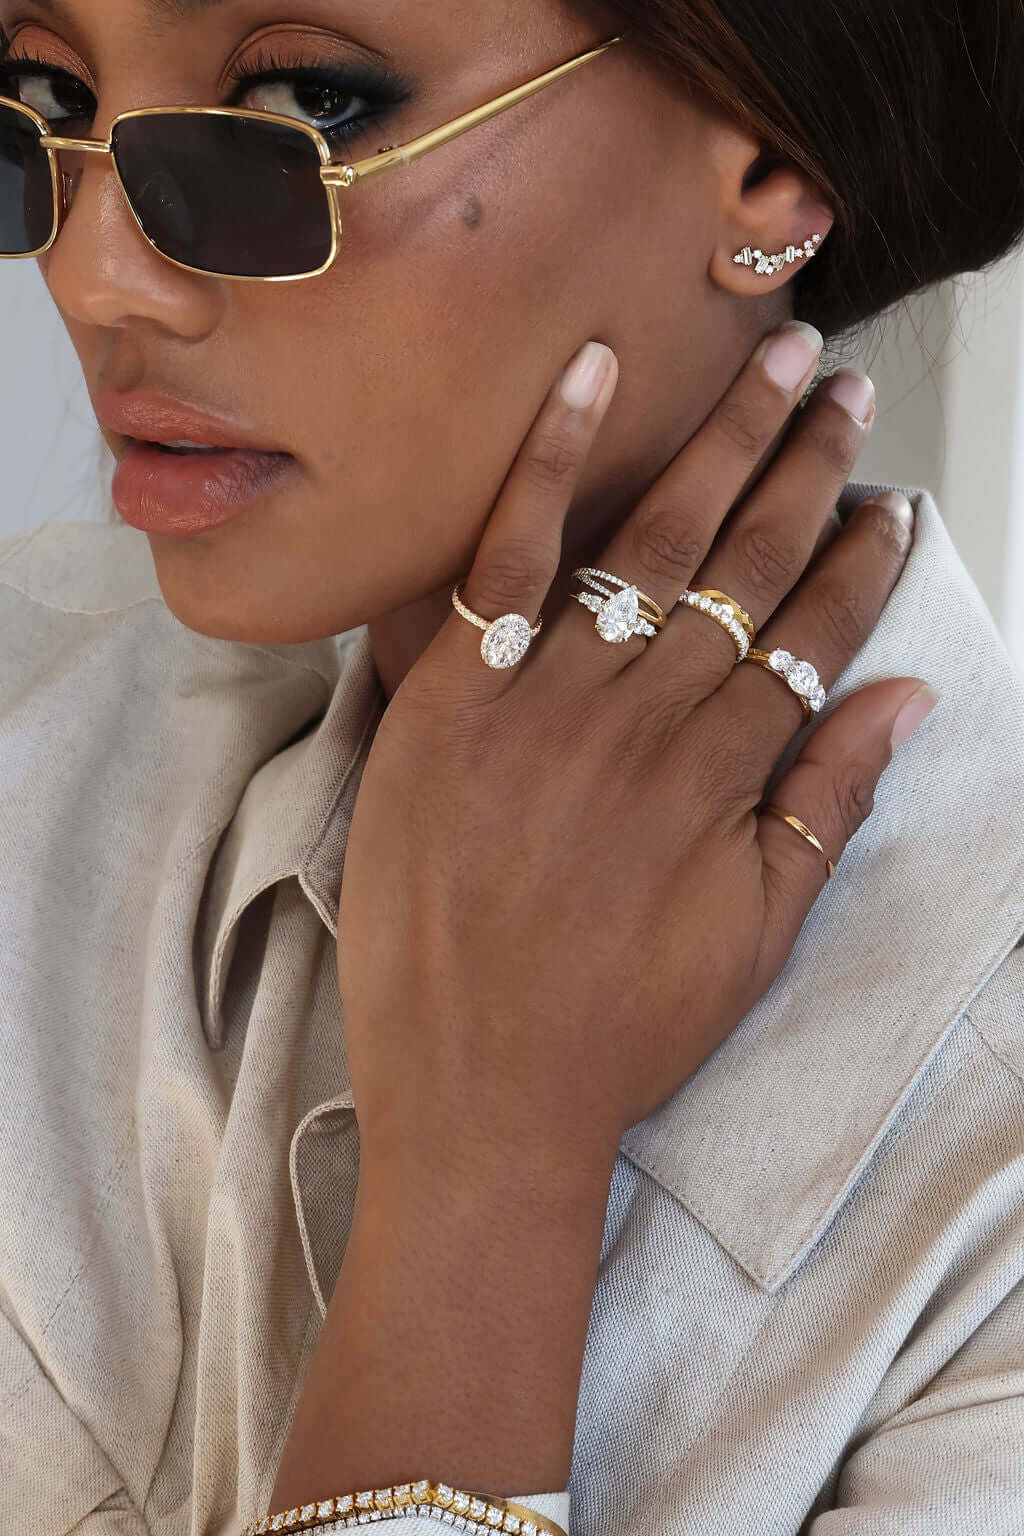 woman wearing multiple rings and earrings